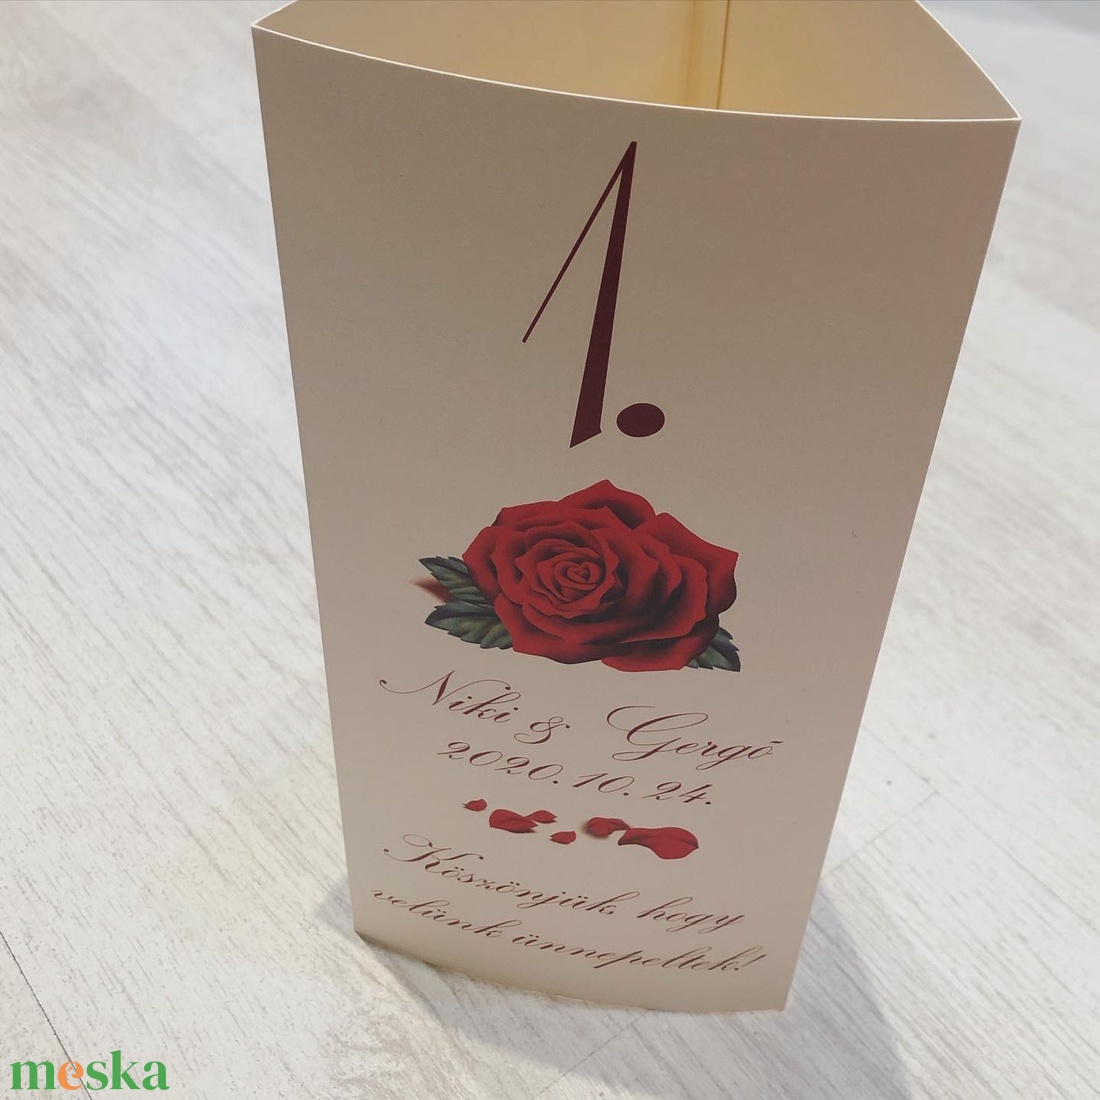 Krém - vörös rózsa menüháromszög - esküvő - meghívó & kártya - menü - Meska.hu